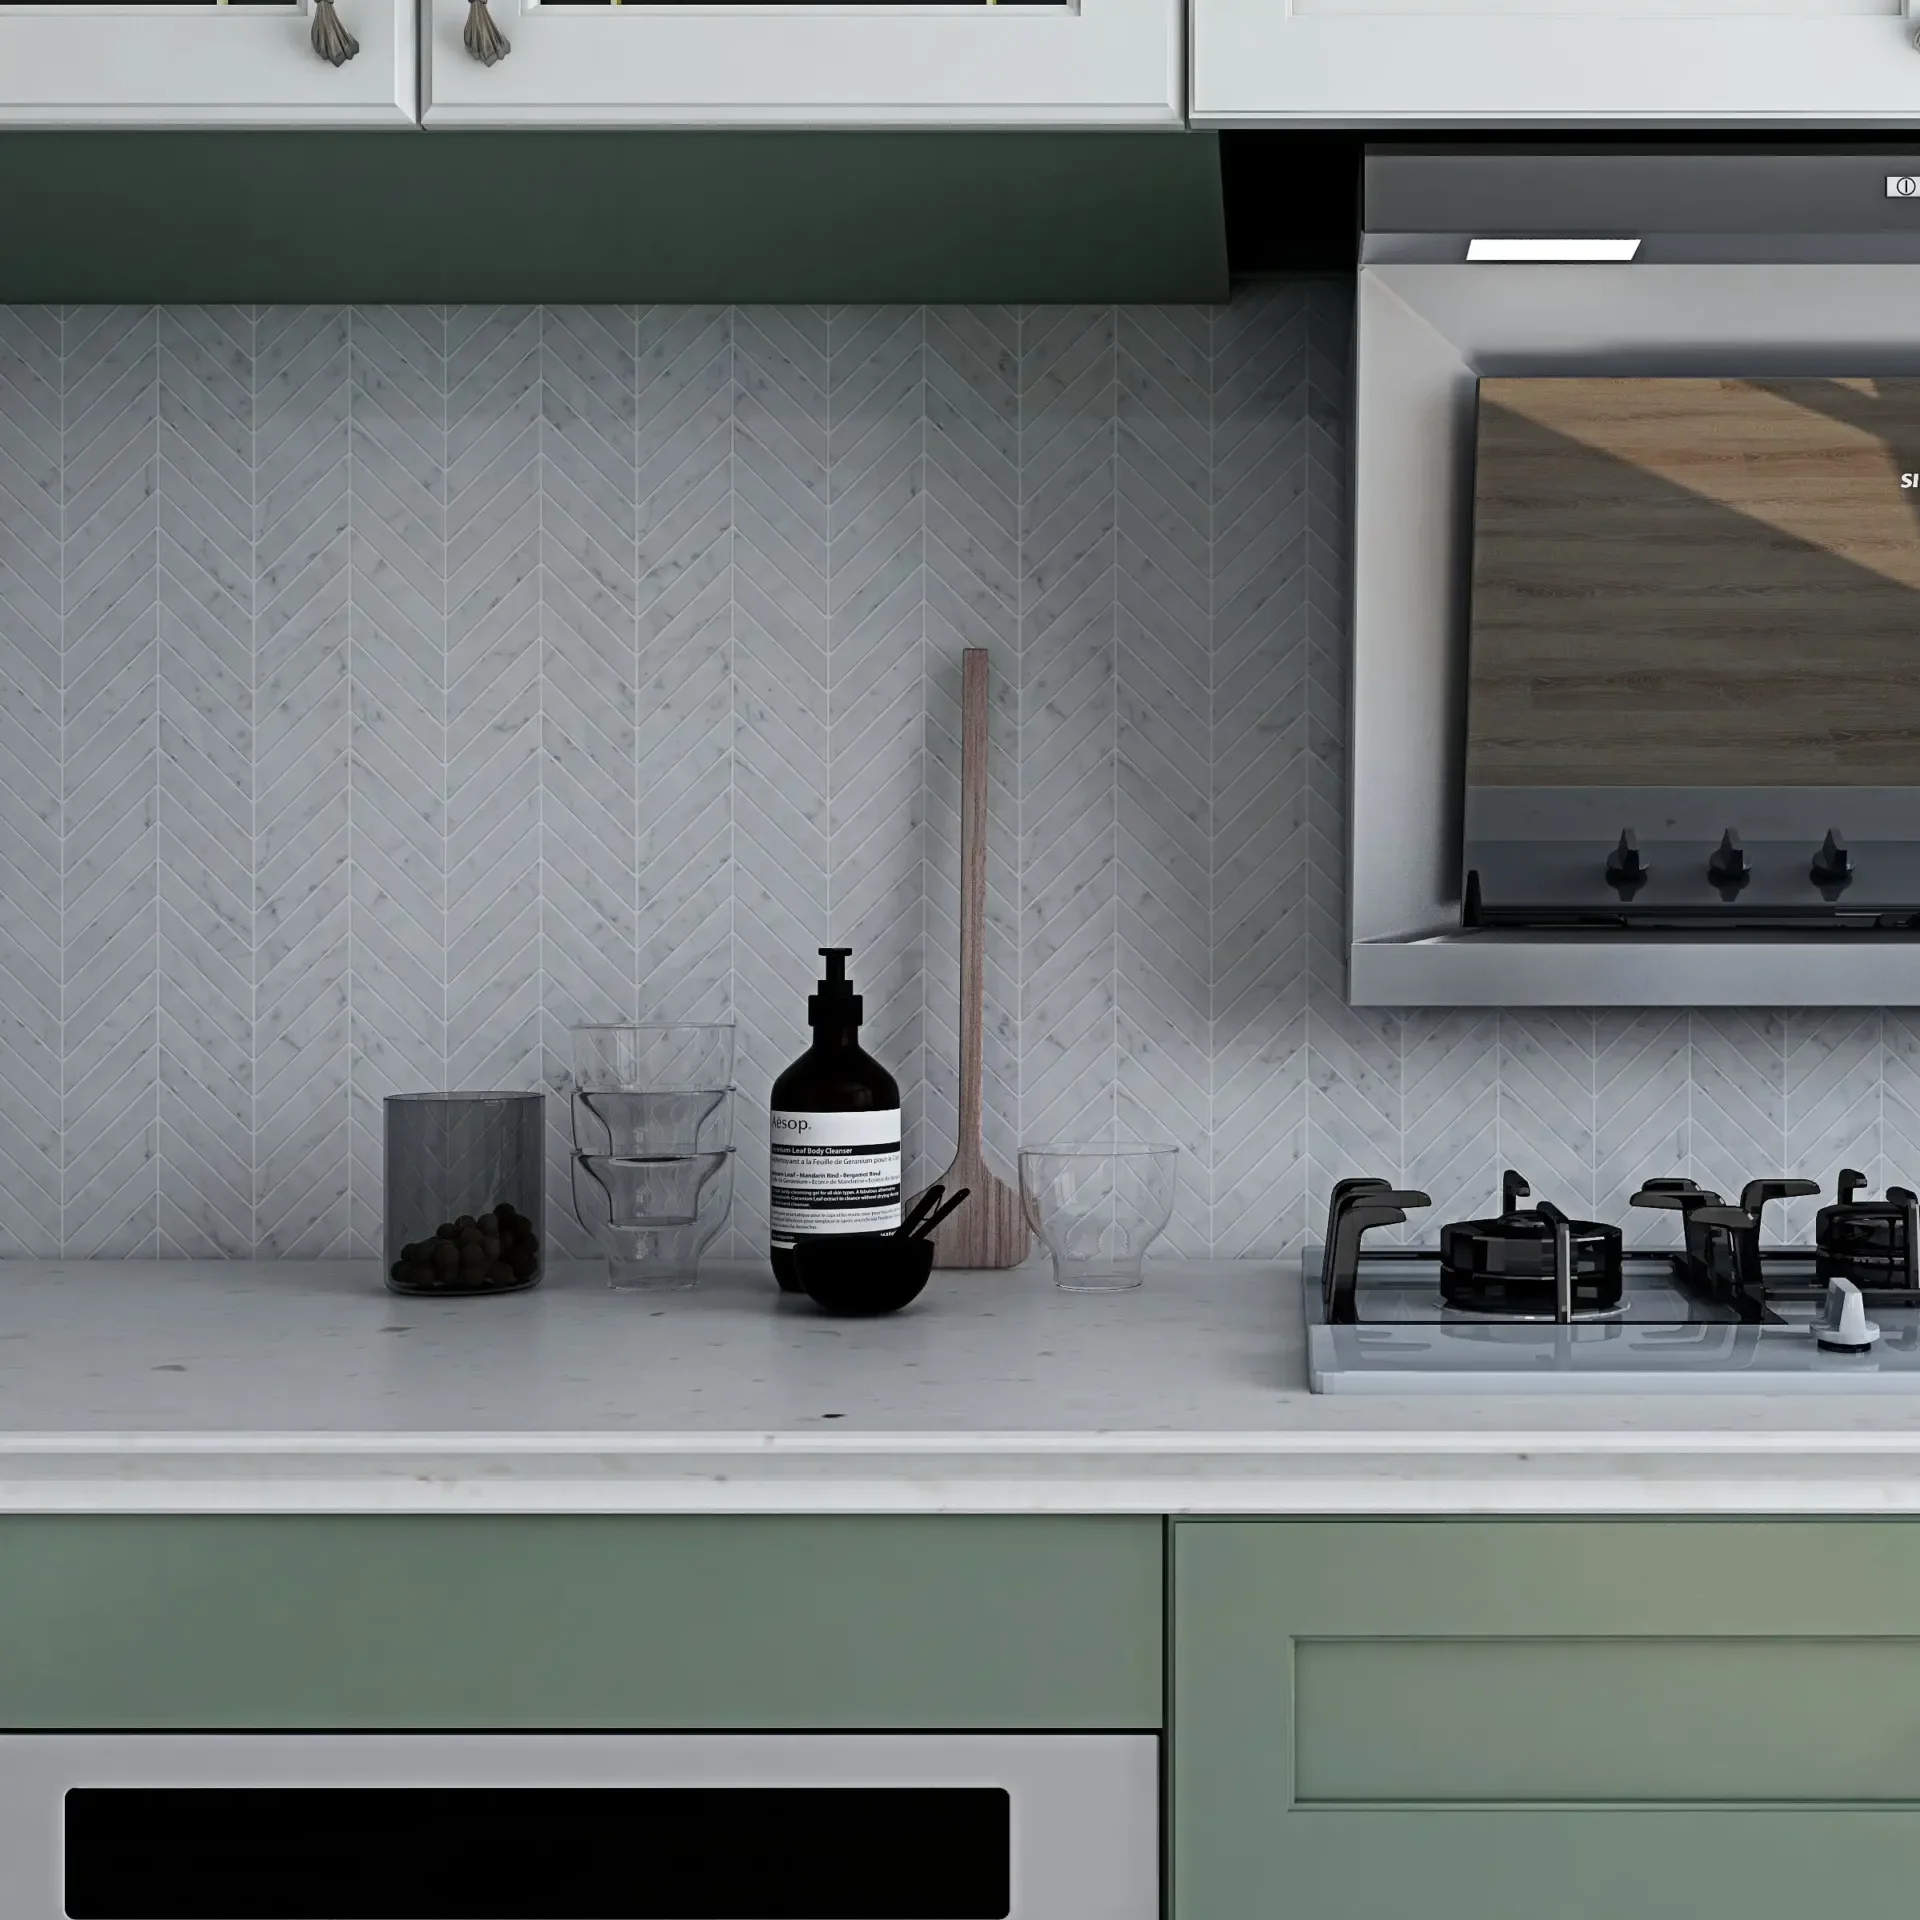 Image of kitchen backsplash featuring 1x4 polished marble chevron mosaic tile